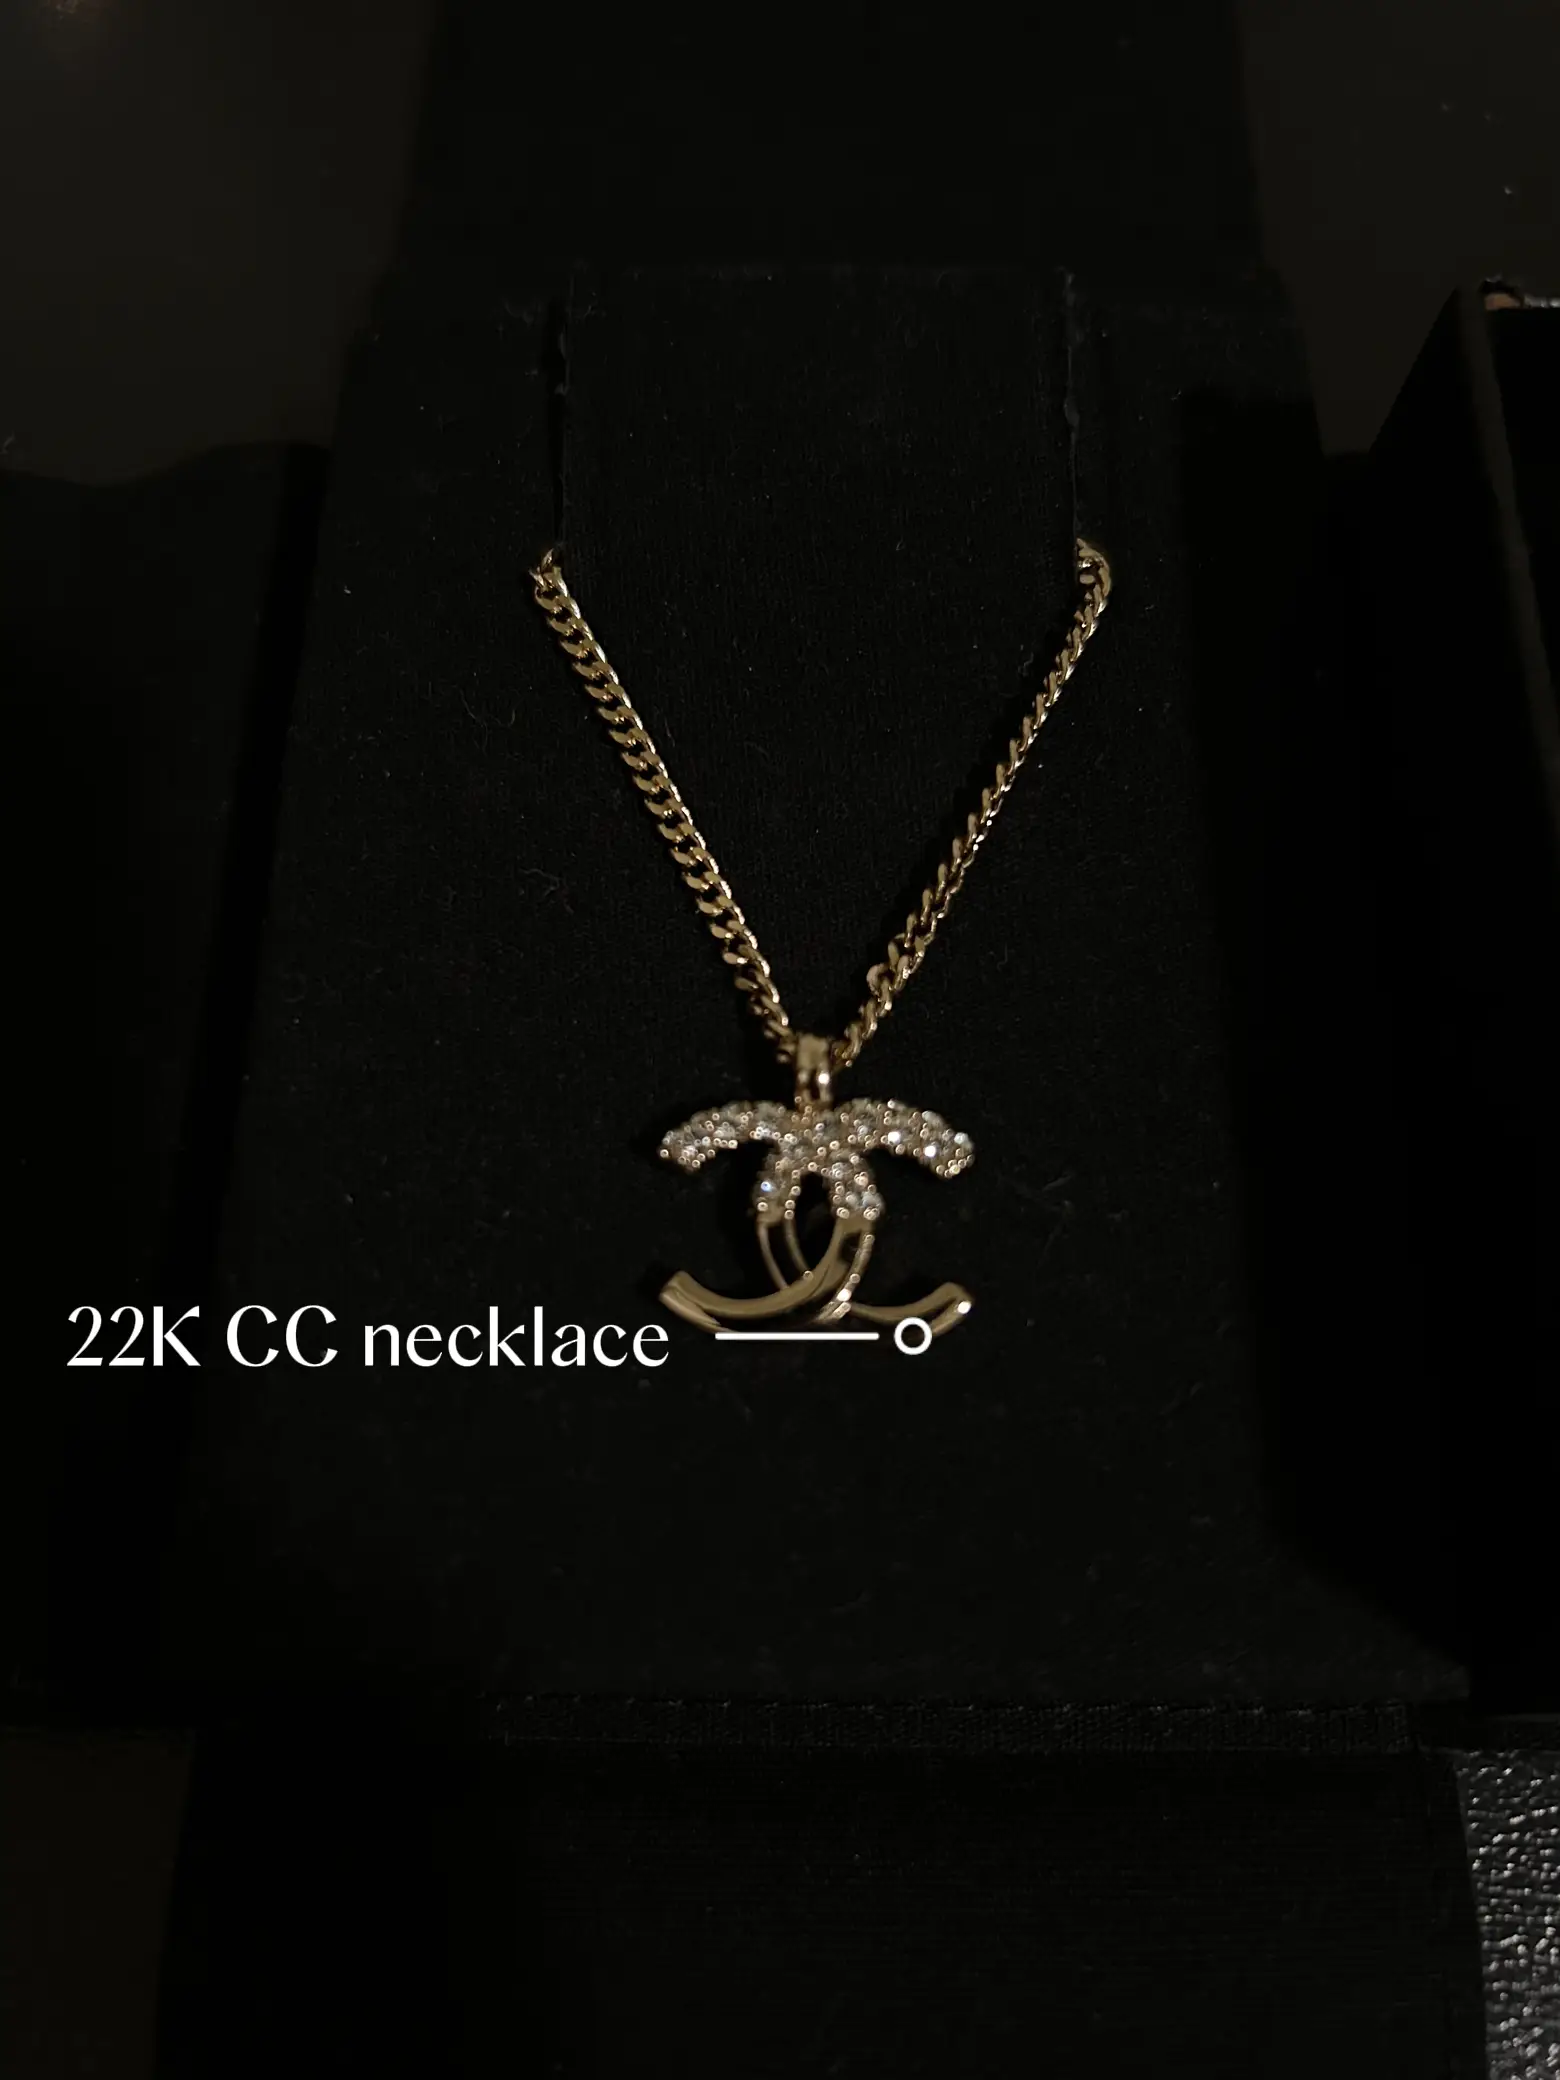 Chanel Necklace Hack